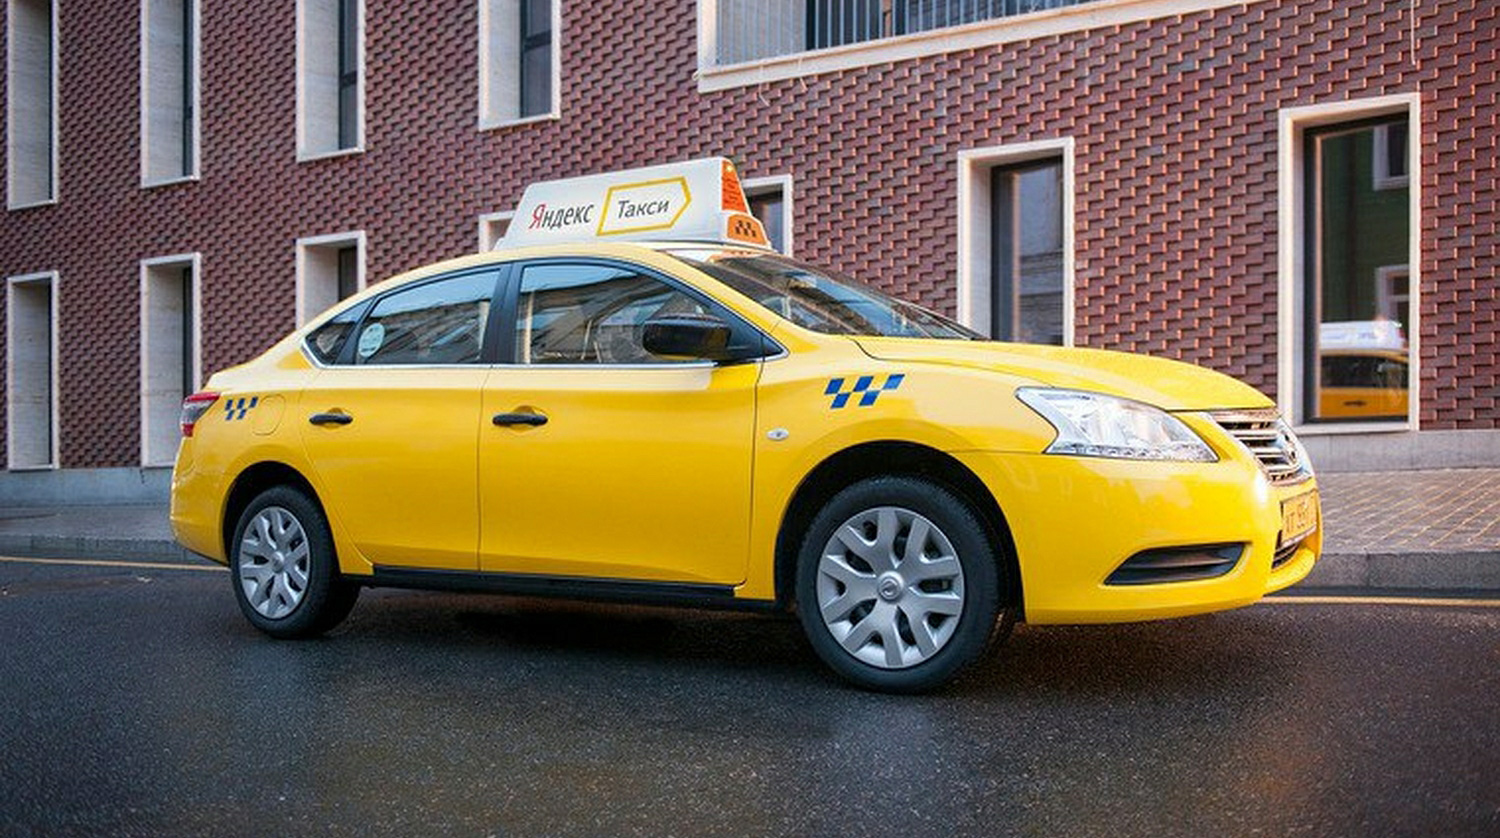 «Яндекс.Такси» и Uber зачастую нанимают непрофессиональных водителей, рассказали в профсоюзе undefined